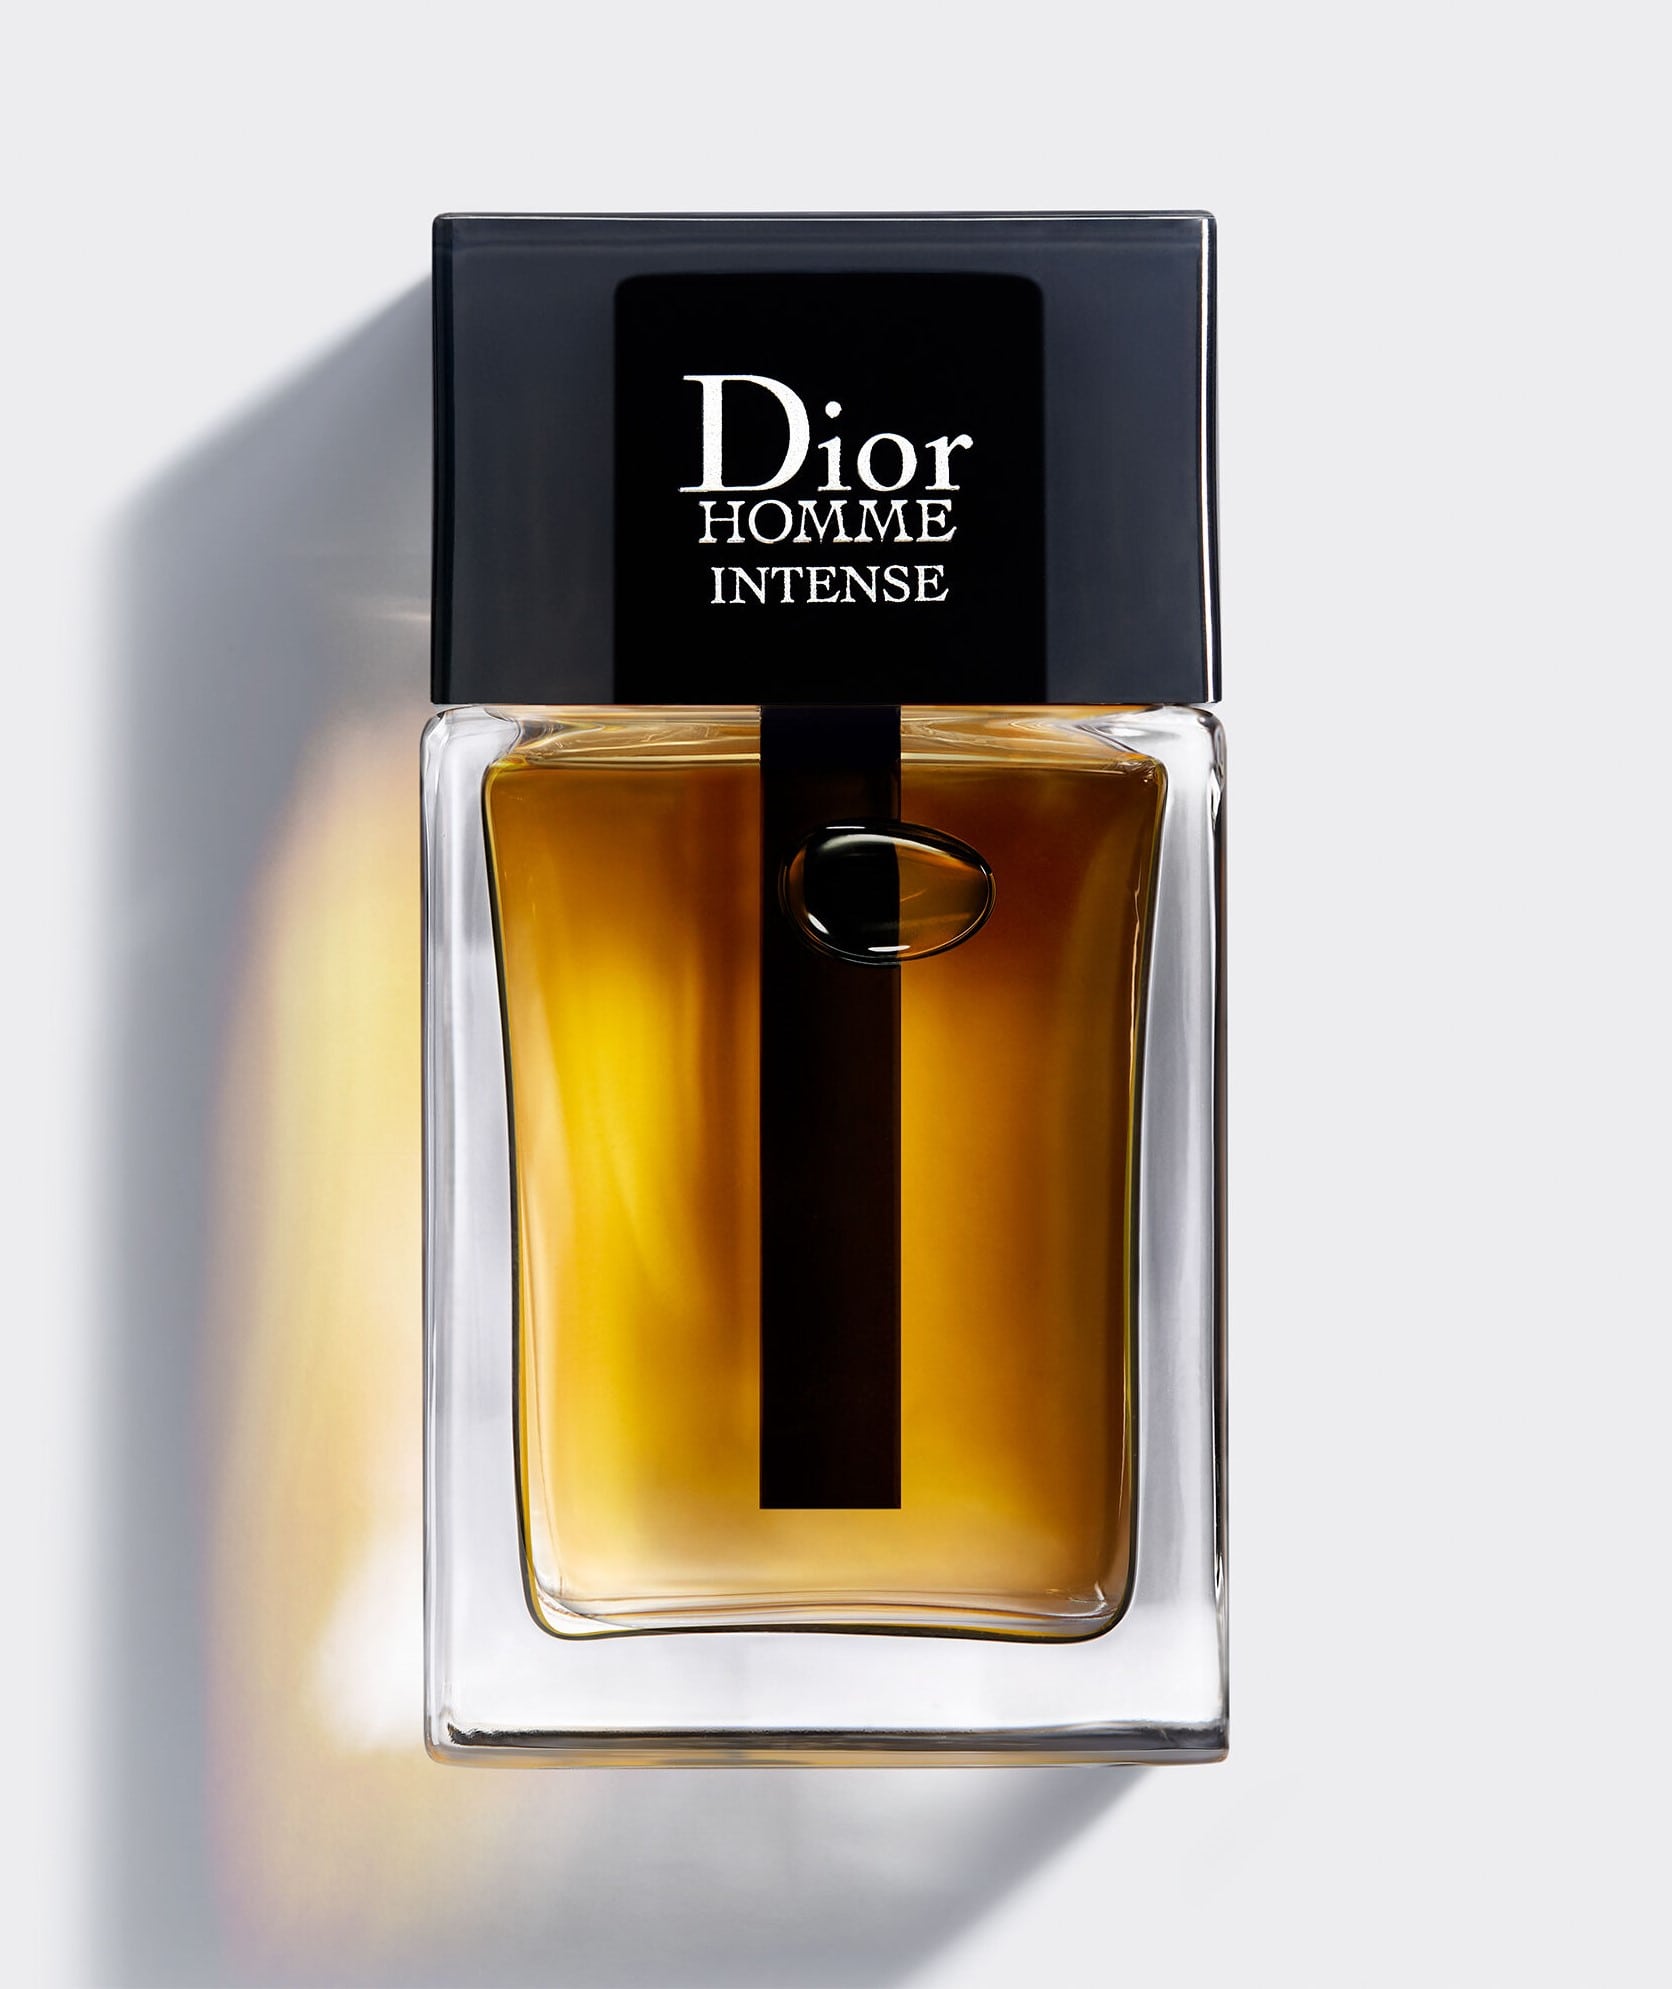 Dior Homme intense Parfum Spray Perfume for Men by Dior